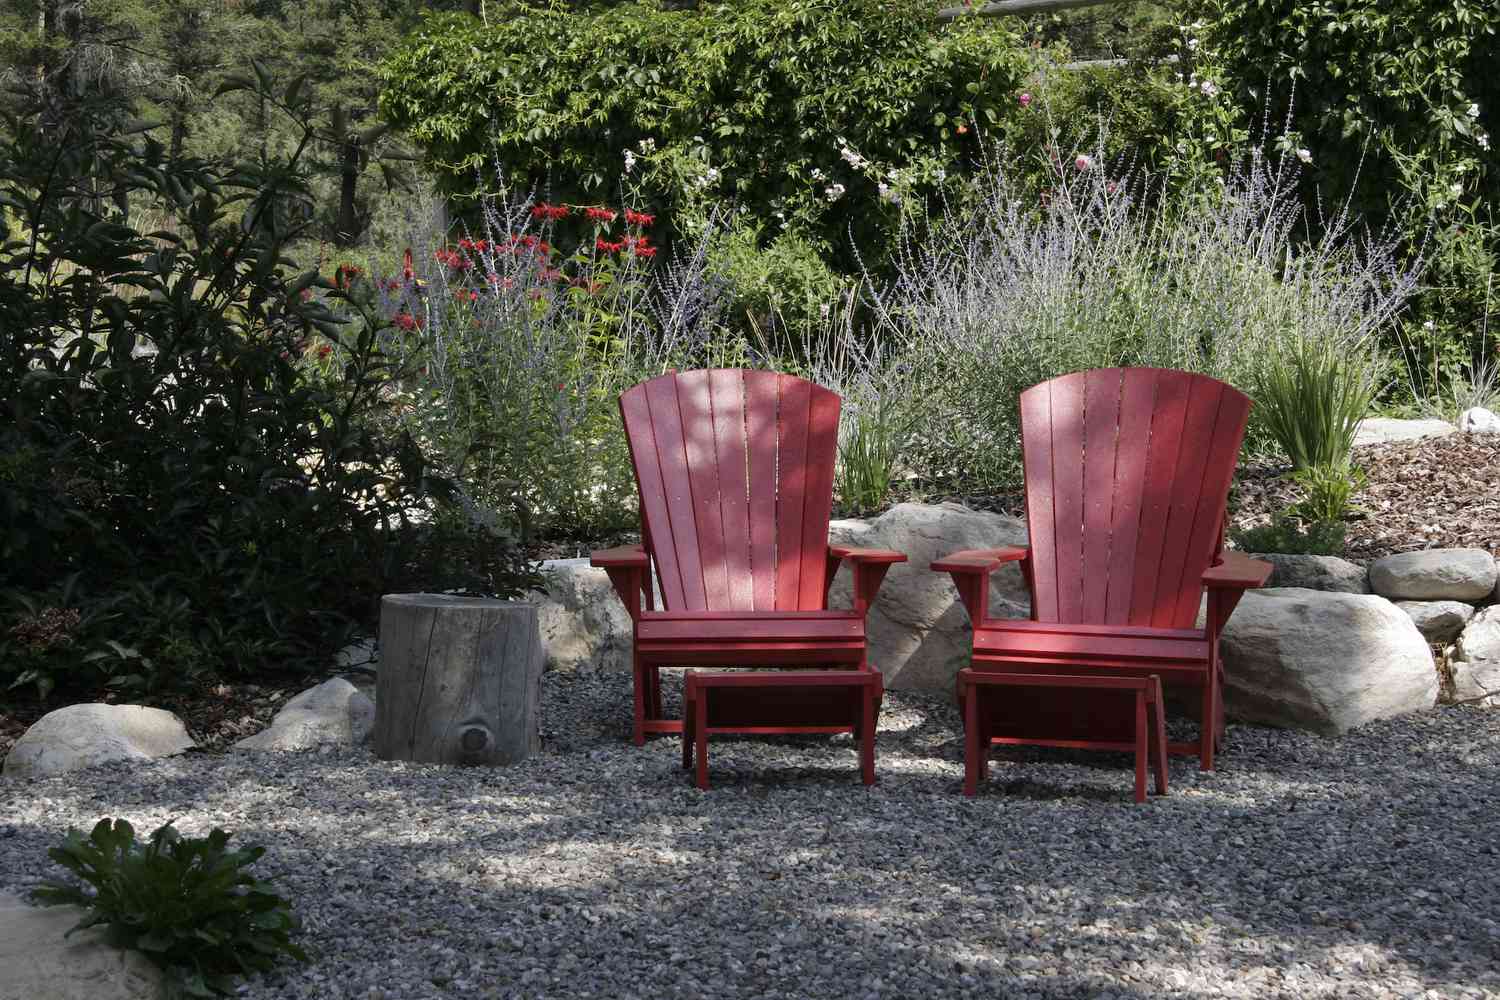 Par de cadeiras Adirondack vermelhas com sálvia russa e erva-cidreira vermelha